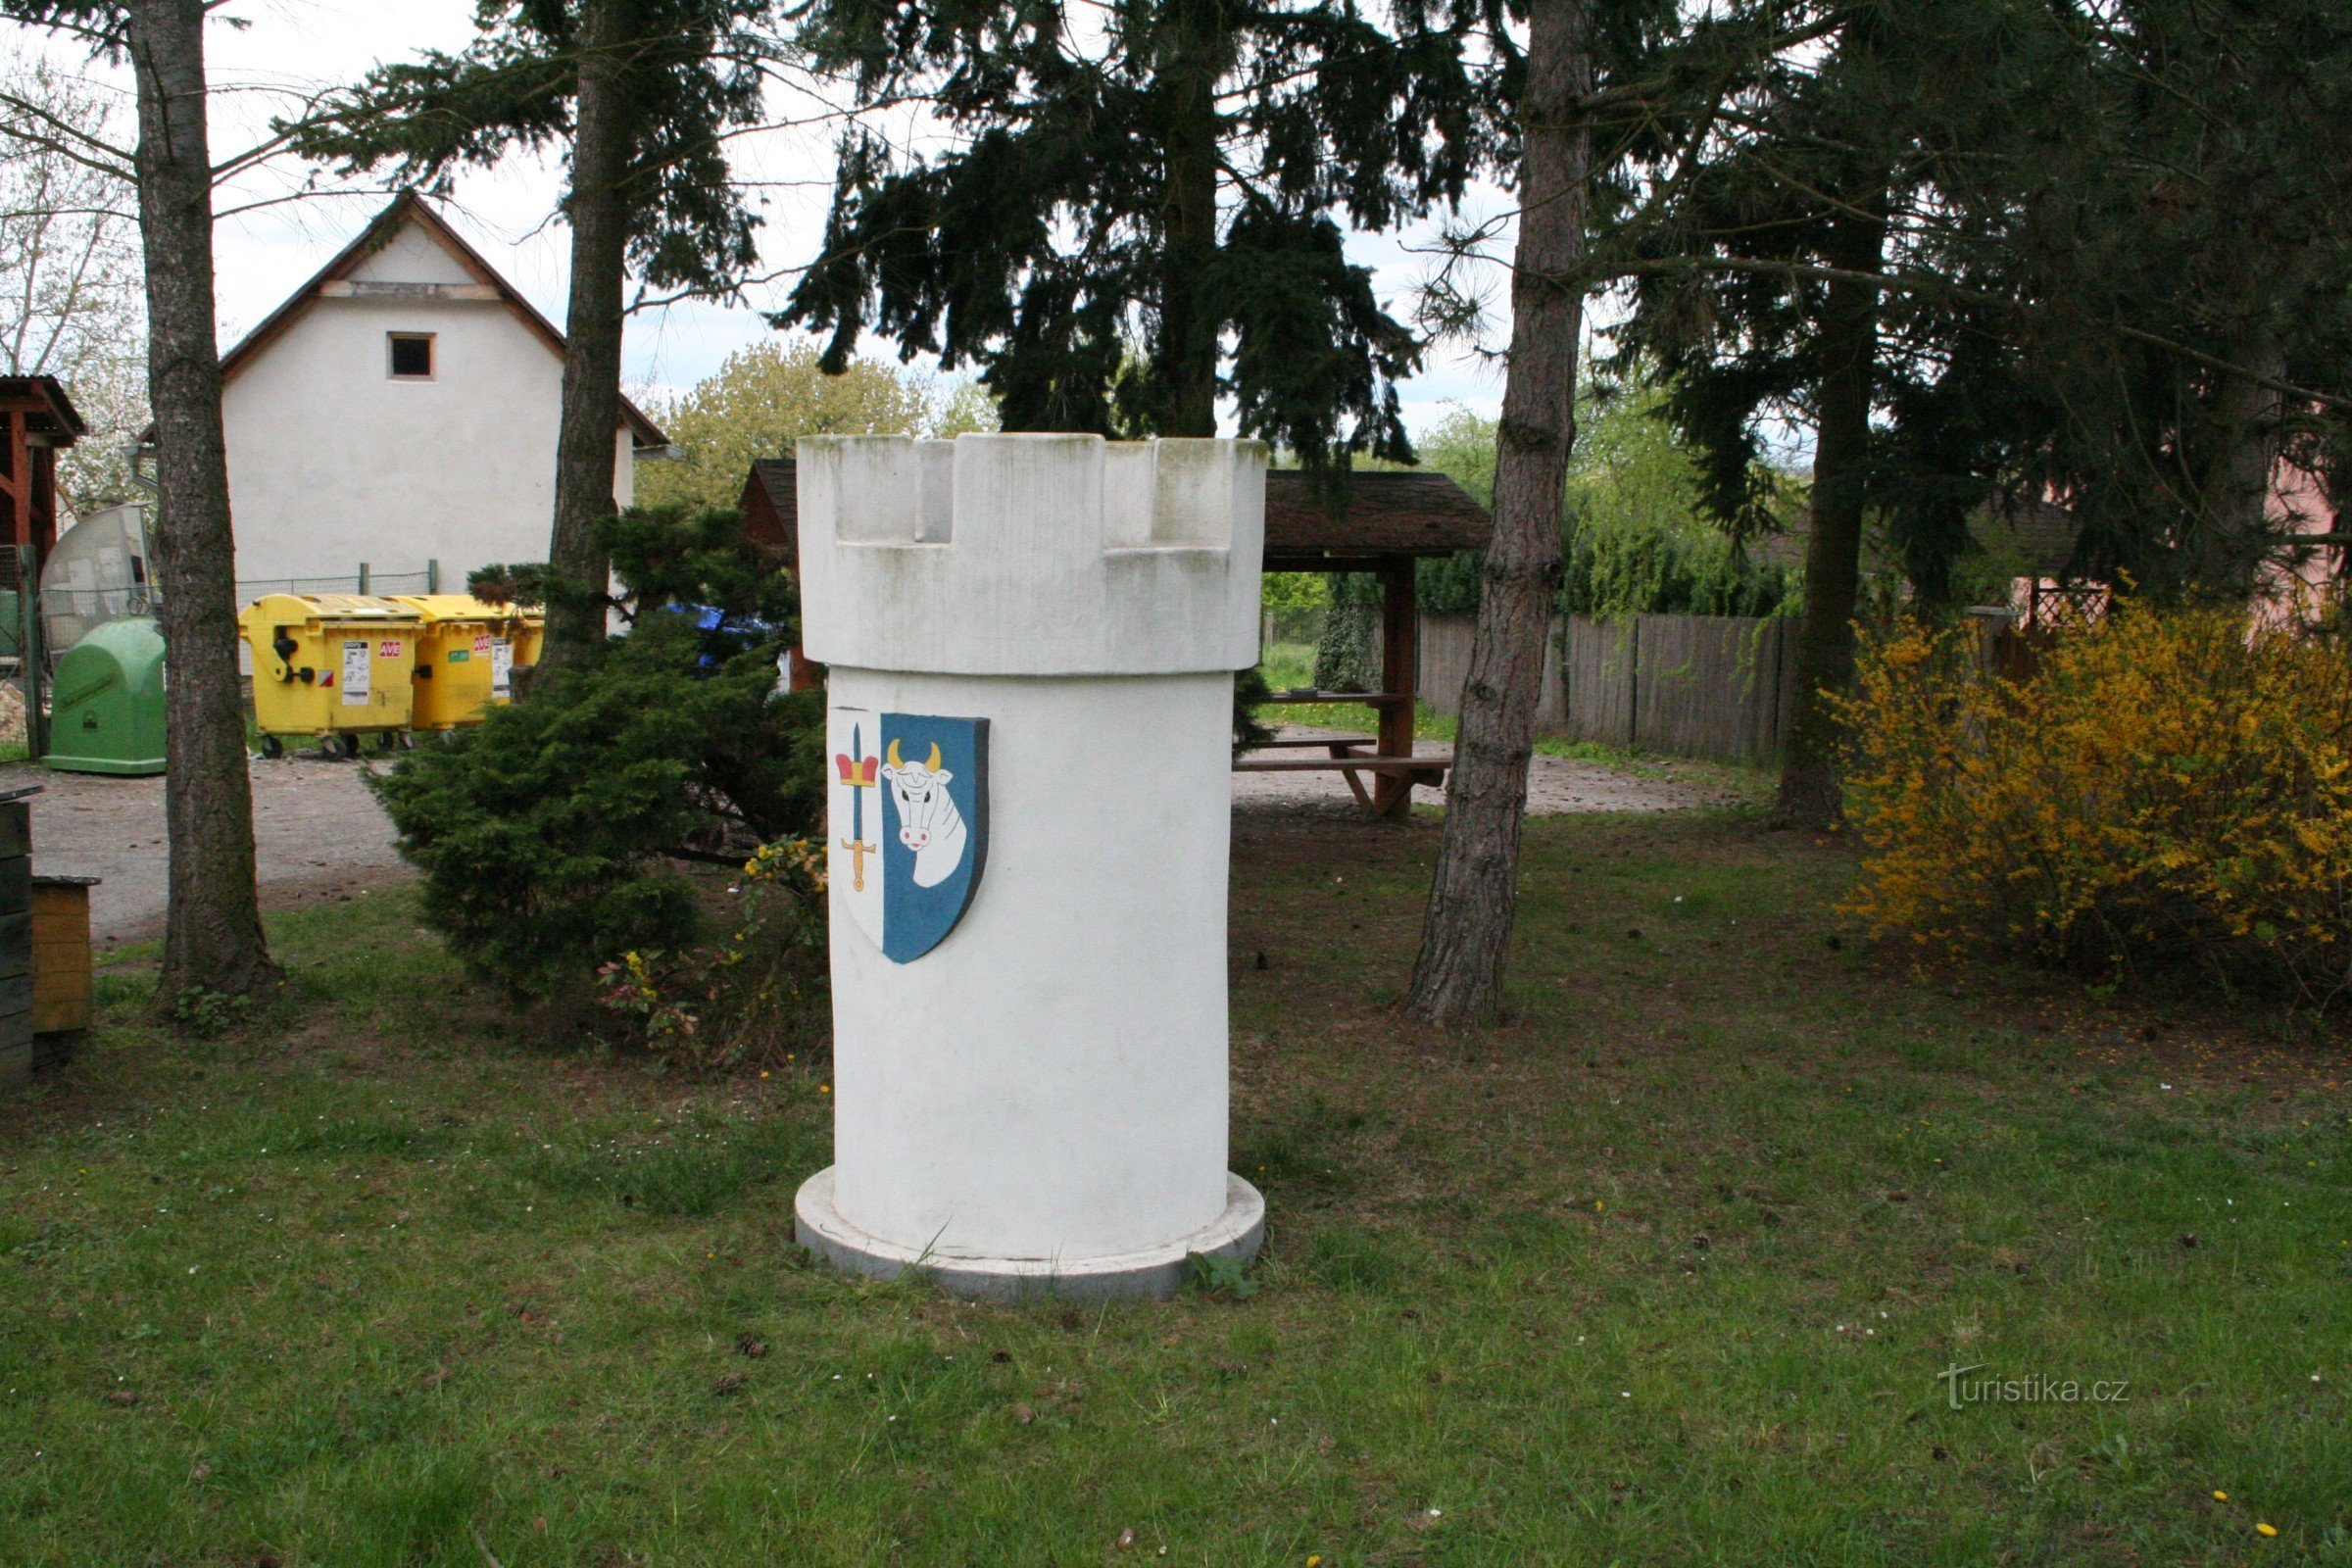 Karlštejnské sakk - Svináre fehér tornya